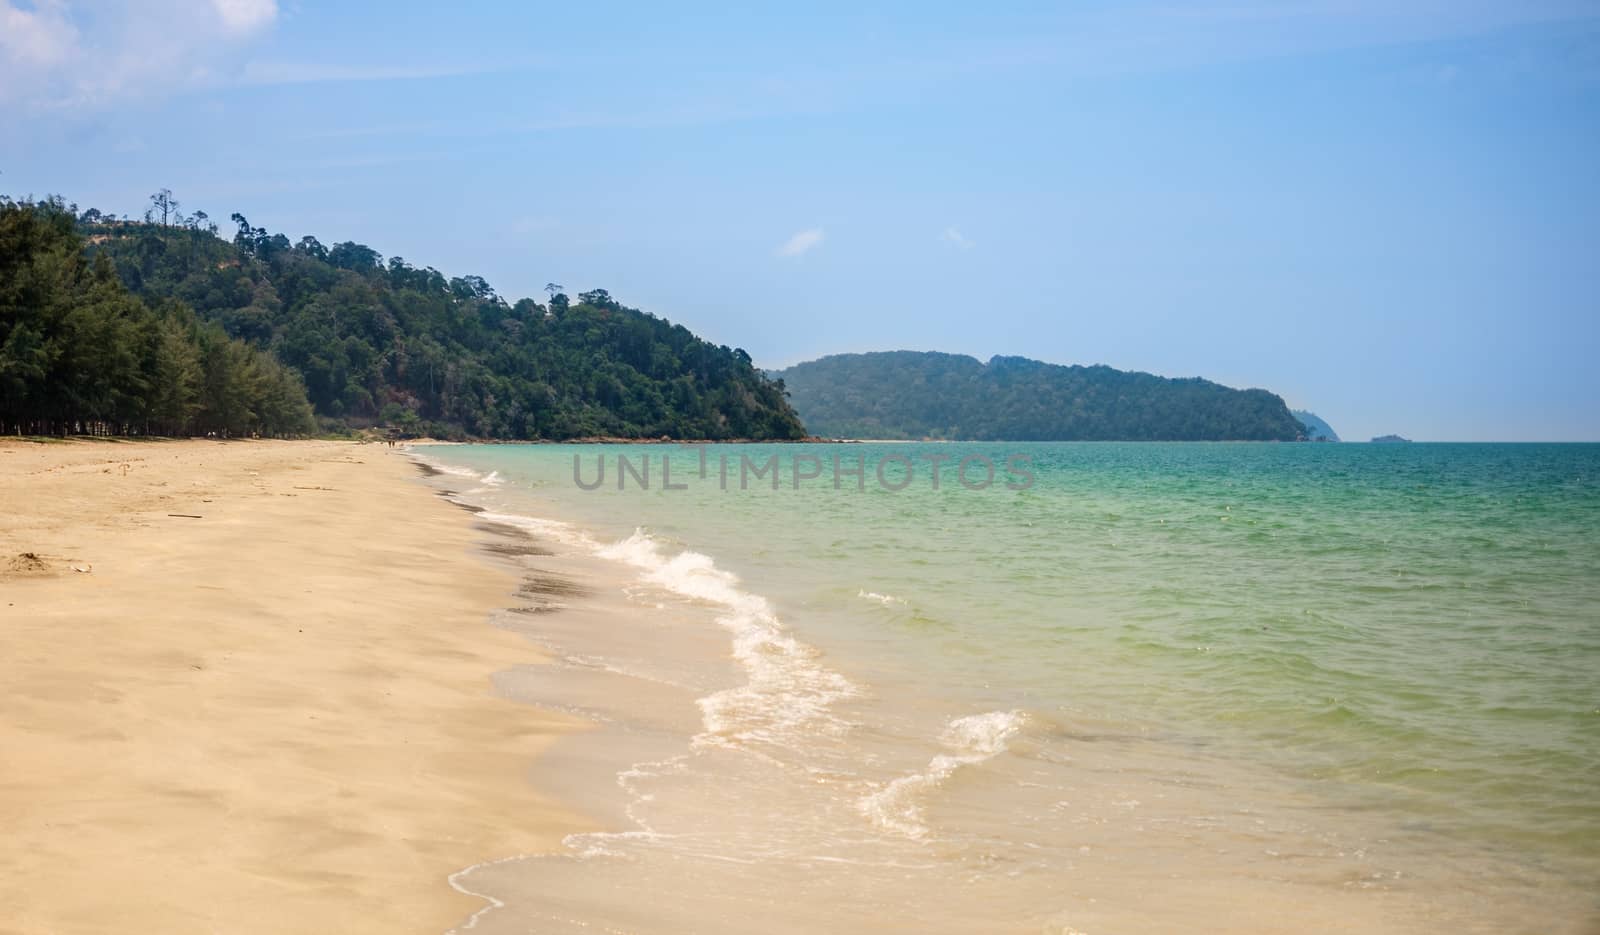 Lonely sandy beach. Green hills, blue sea, white sand. Mersing. Air Papan beach